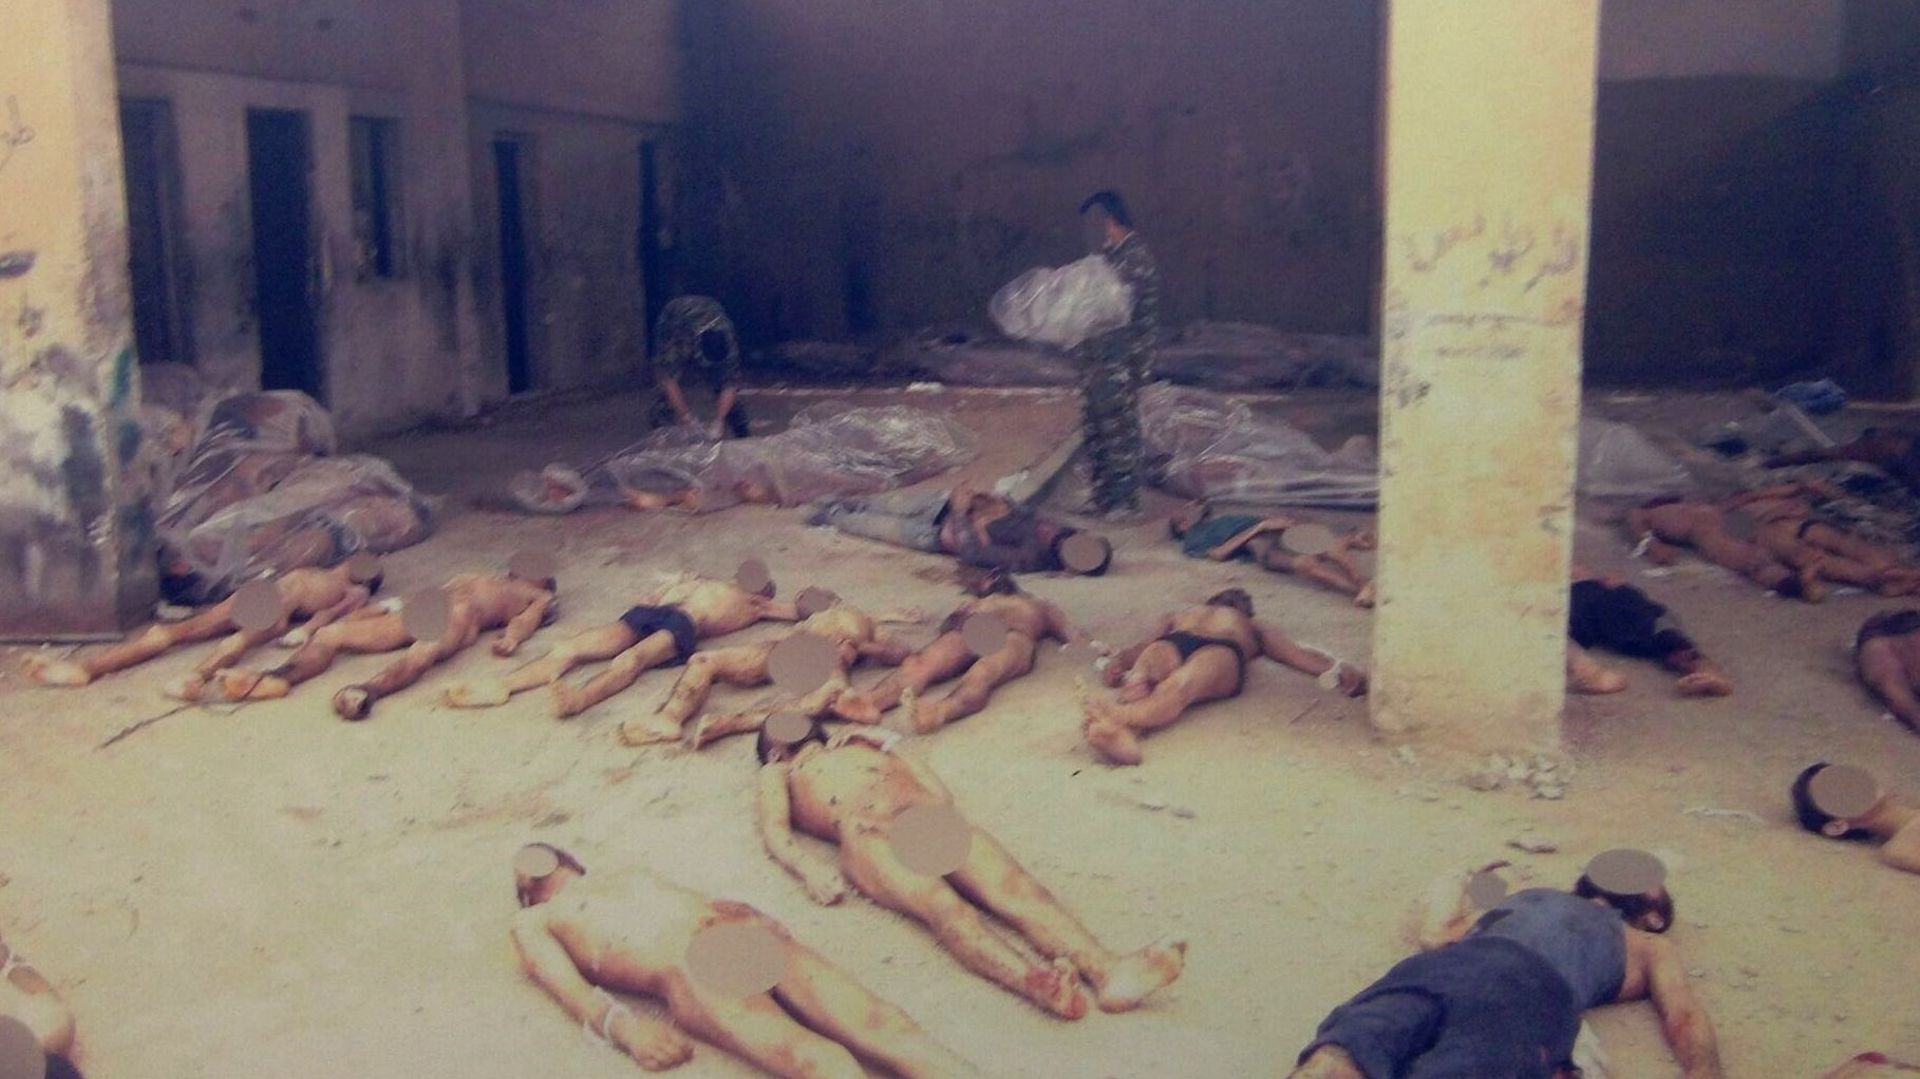 Les clichés représentent les cadavres de 6.786 personnes différentes, tuées dans les centres de détention syriens.